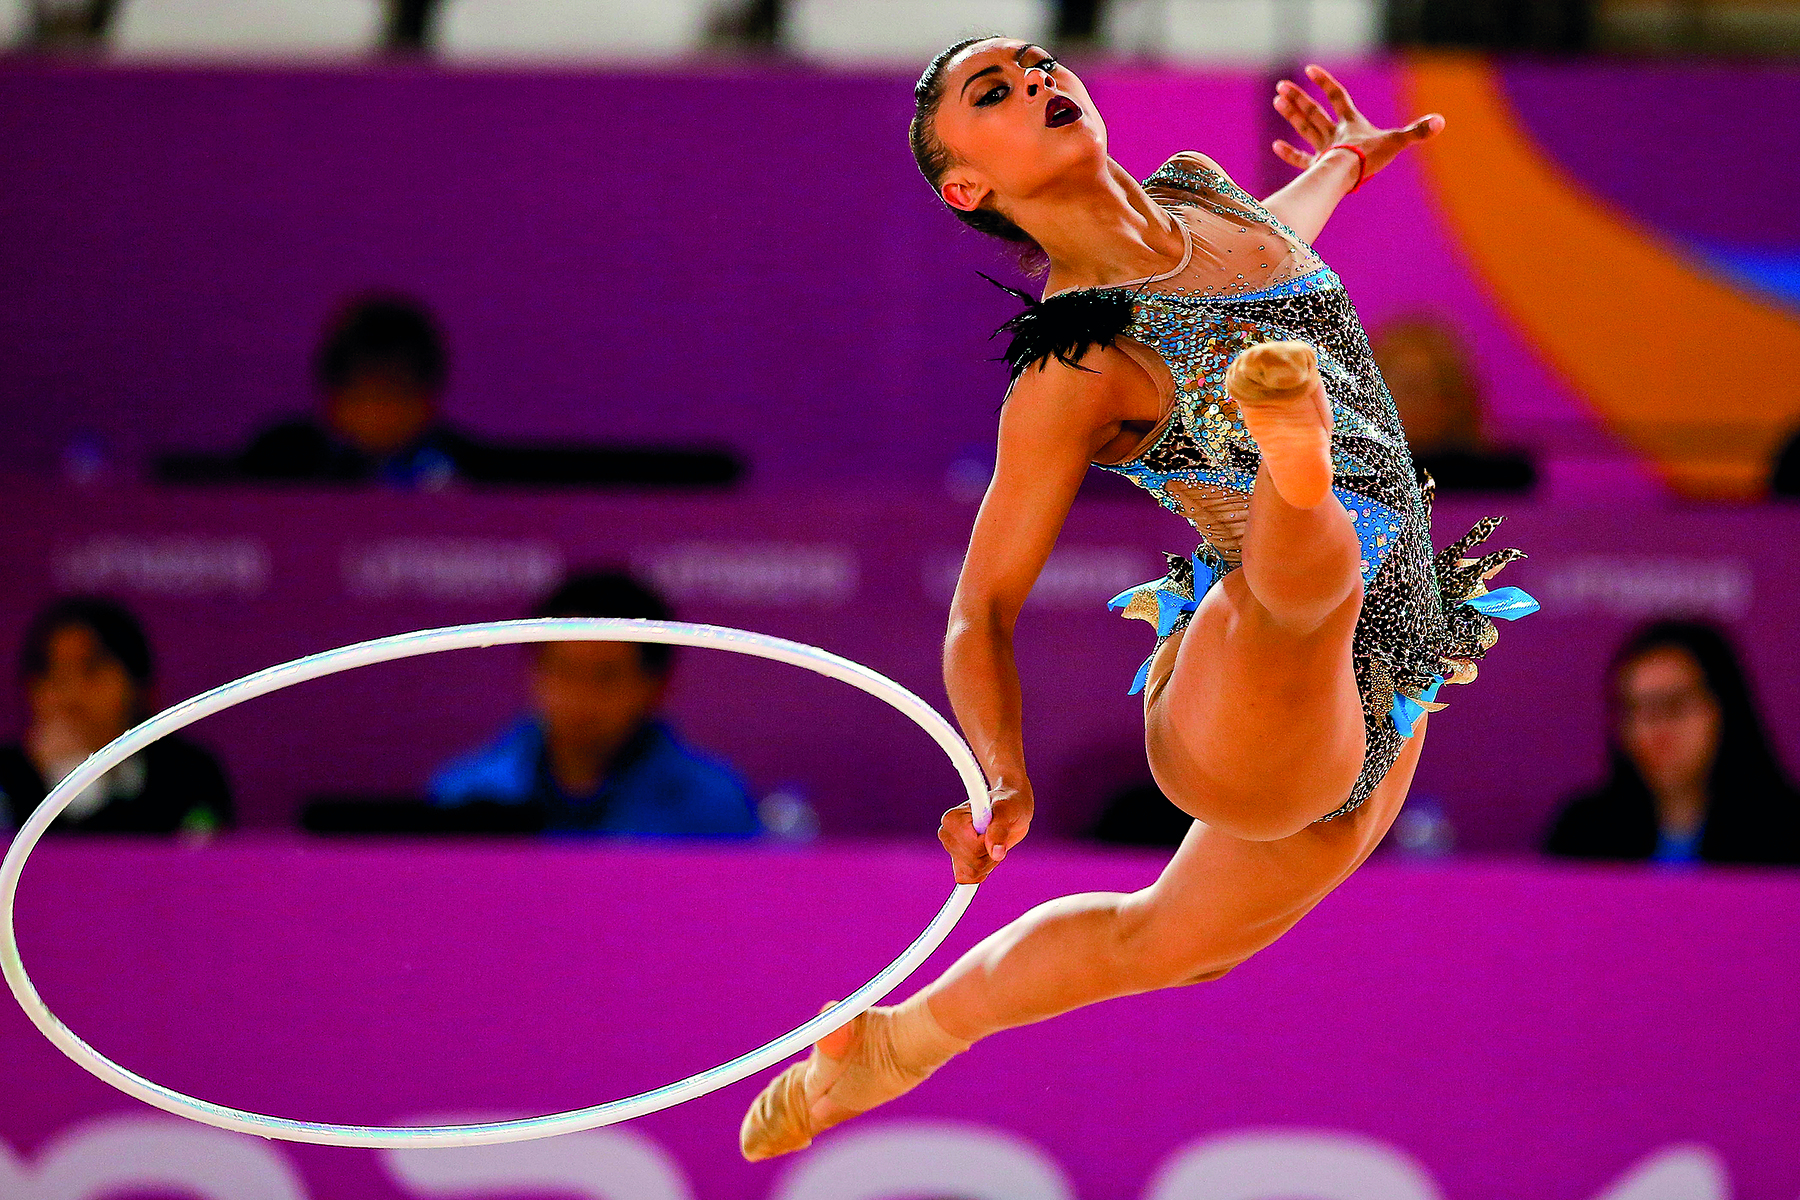 Fotografia. Vista frontal de ginasta de collant no ar com as pernas abertas e os braços para o lado. Ela segura um aro branco, como um bambolê, próximo às pernas.